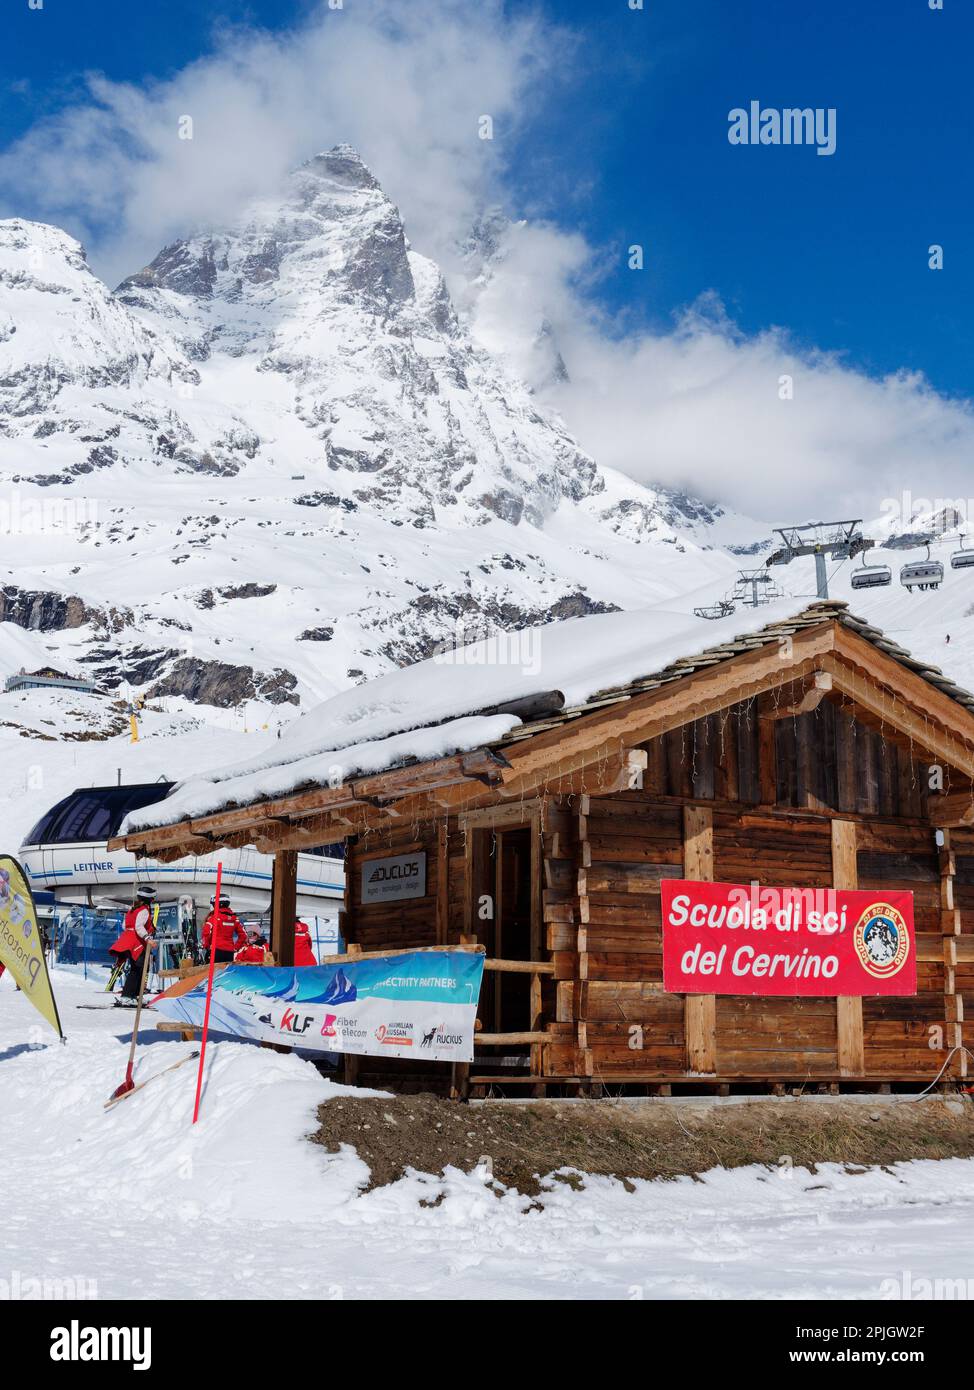 Skischule im Ferienort Breuil-Cervinia im Aosta-Tal, Italien, mit einem Sessellift und dem schneebedeckten Cervino-Berg, auch bekannt als Matterhorn, dahinter. Stockfoto